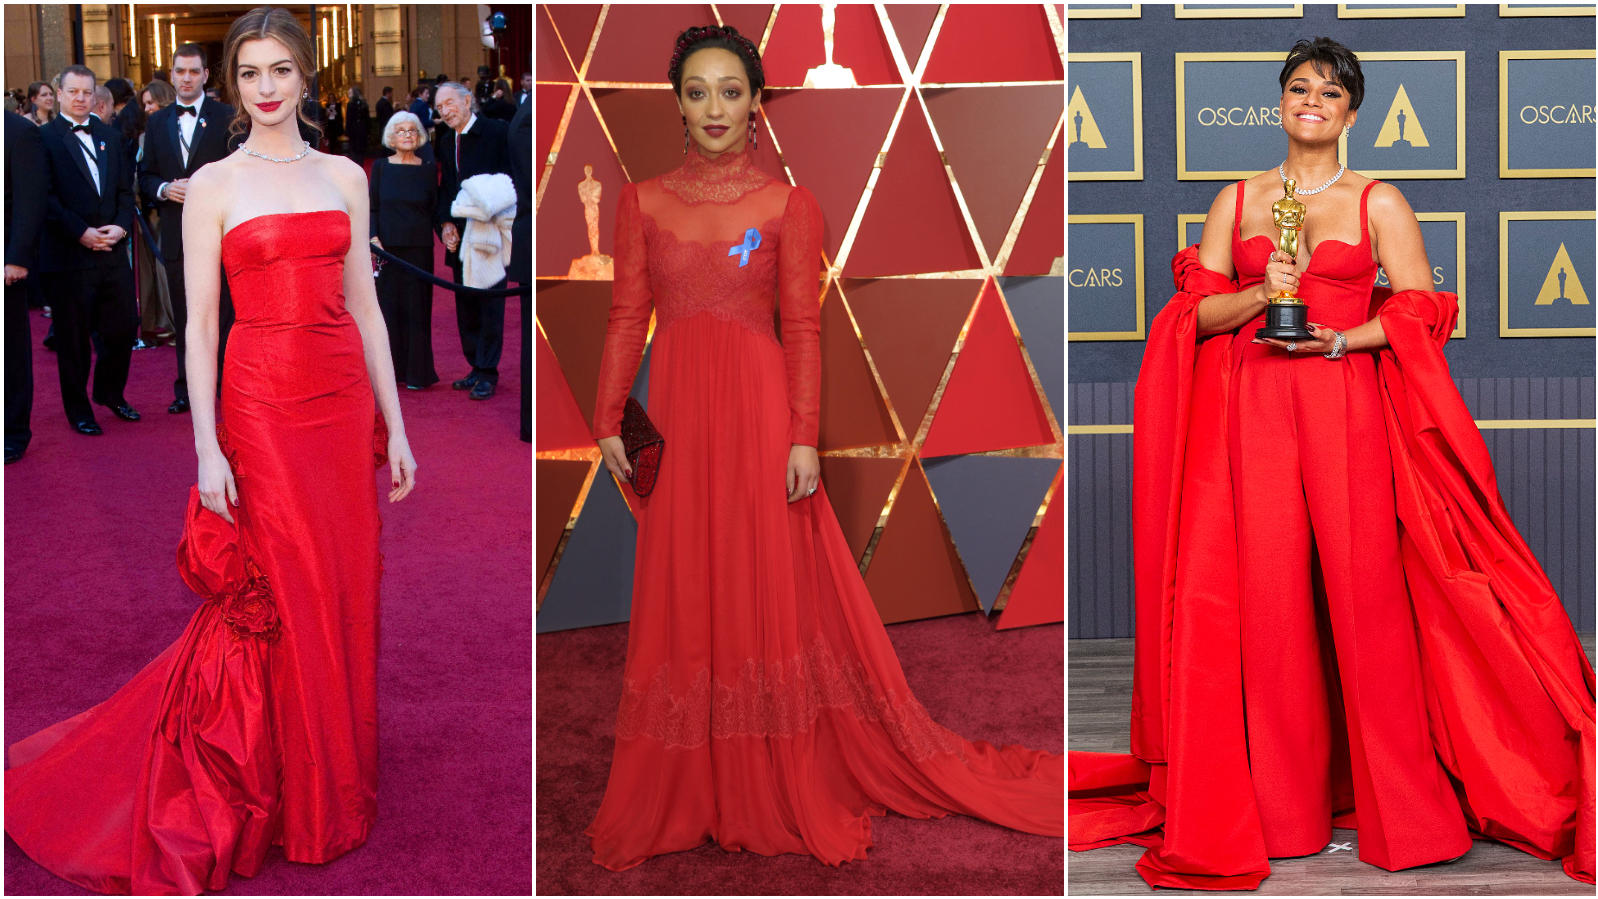 Anne Hathaway, Ruth Negga und Ariana DeBose nehmen den roten Teppich wörtlich und kamen zu den Oscars in der Signalfarbe Rot.